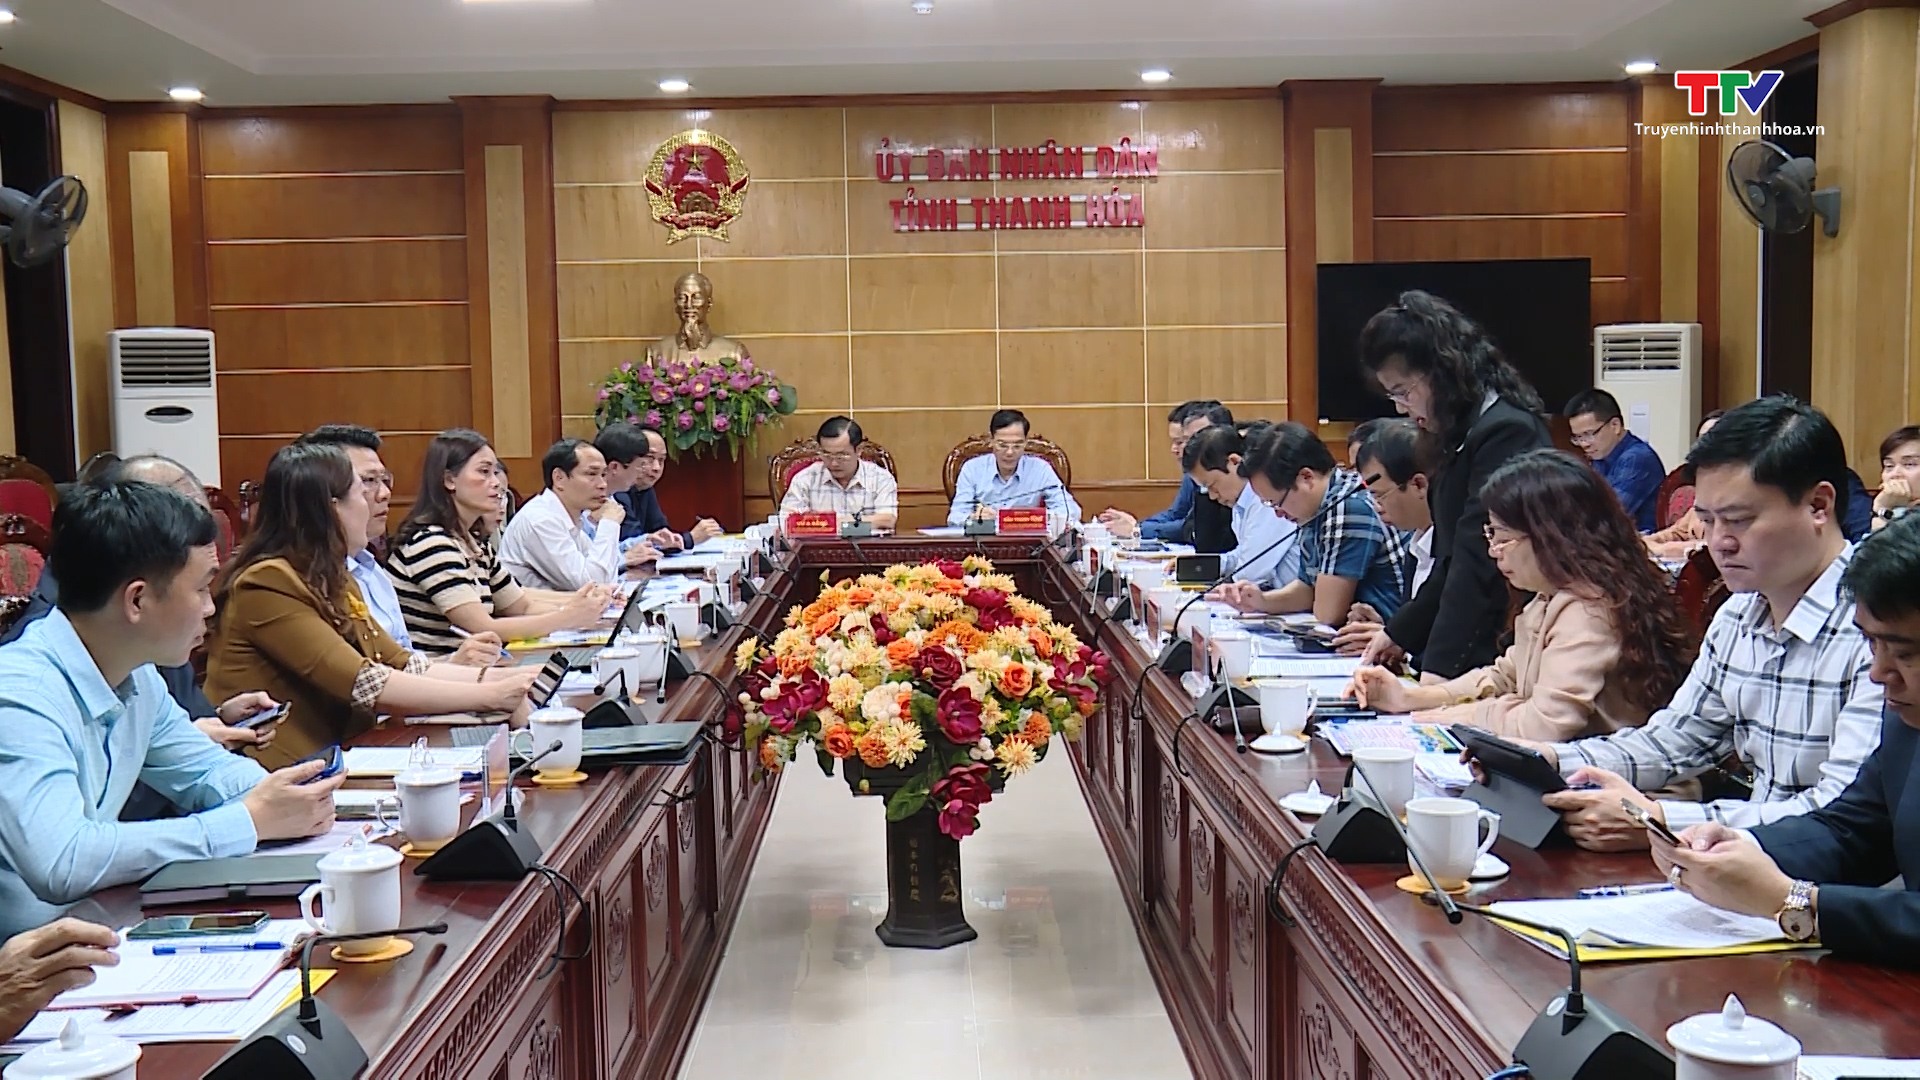 Chuẩn bị tổ chức Tuần văn hóa du lịch Điện Biên - Thanh Hóa tại tỉnh Thanh Hóa- Ảnh 1.